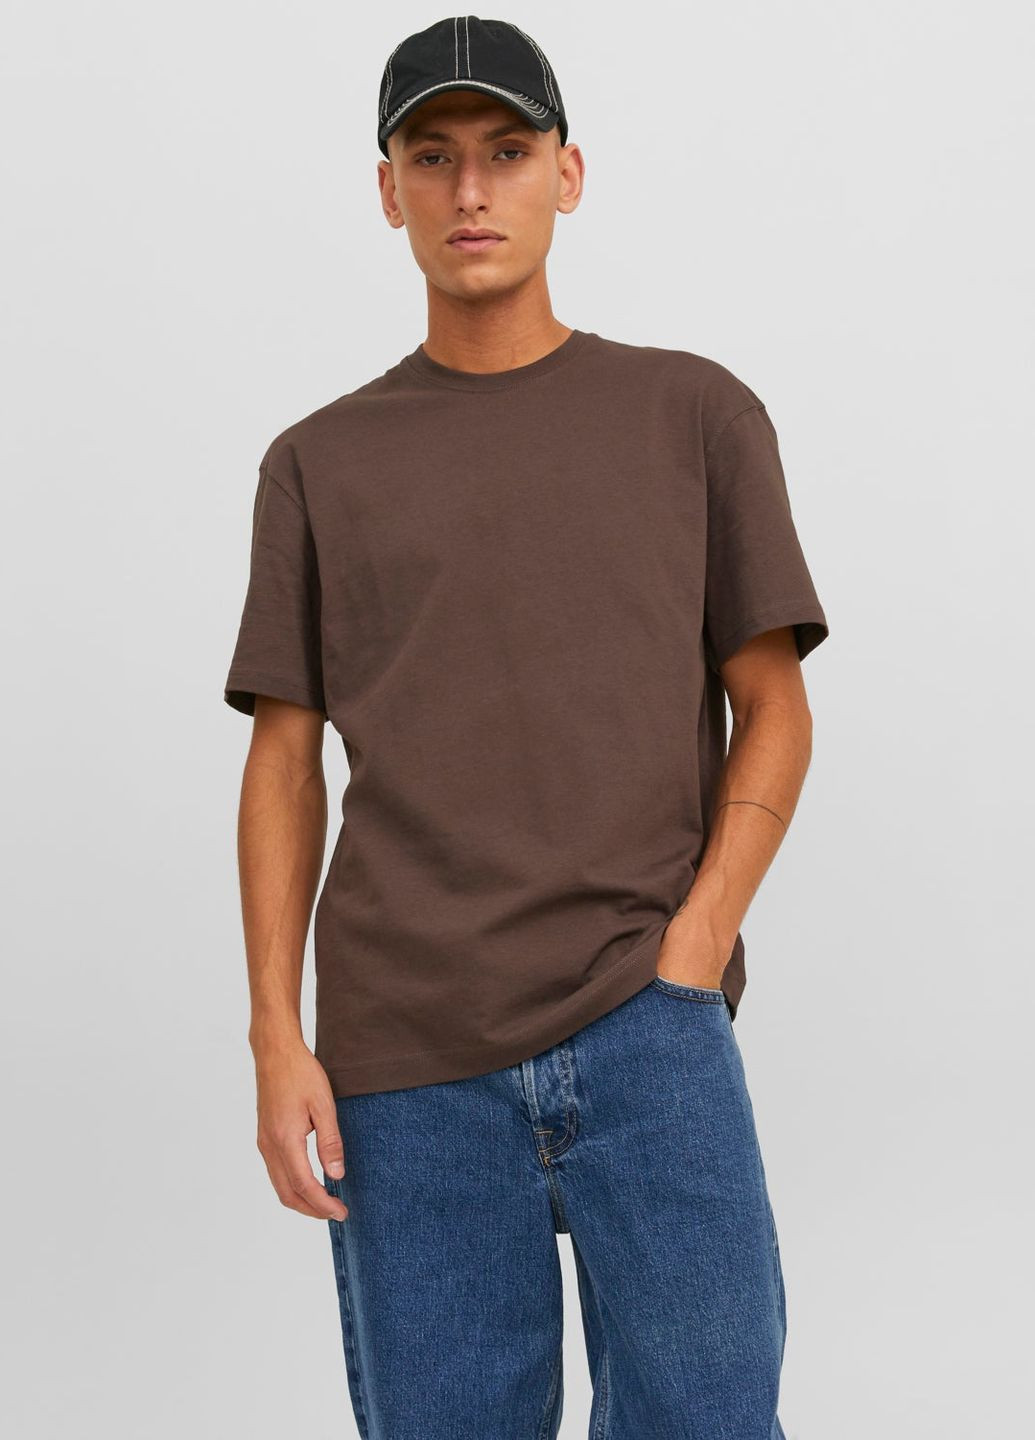 Темно-коричневая футболка basic,темно-коричневый,jack&jones Jack & Jones